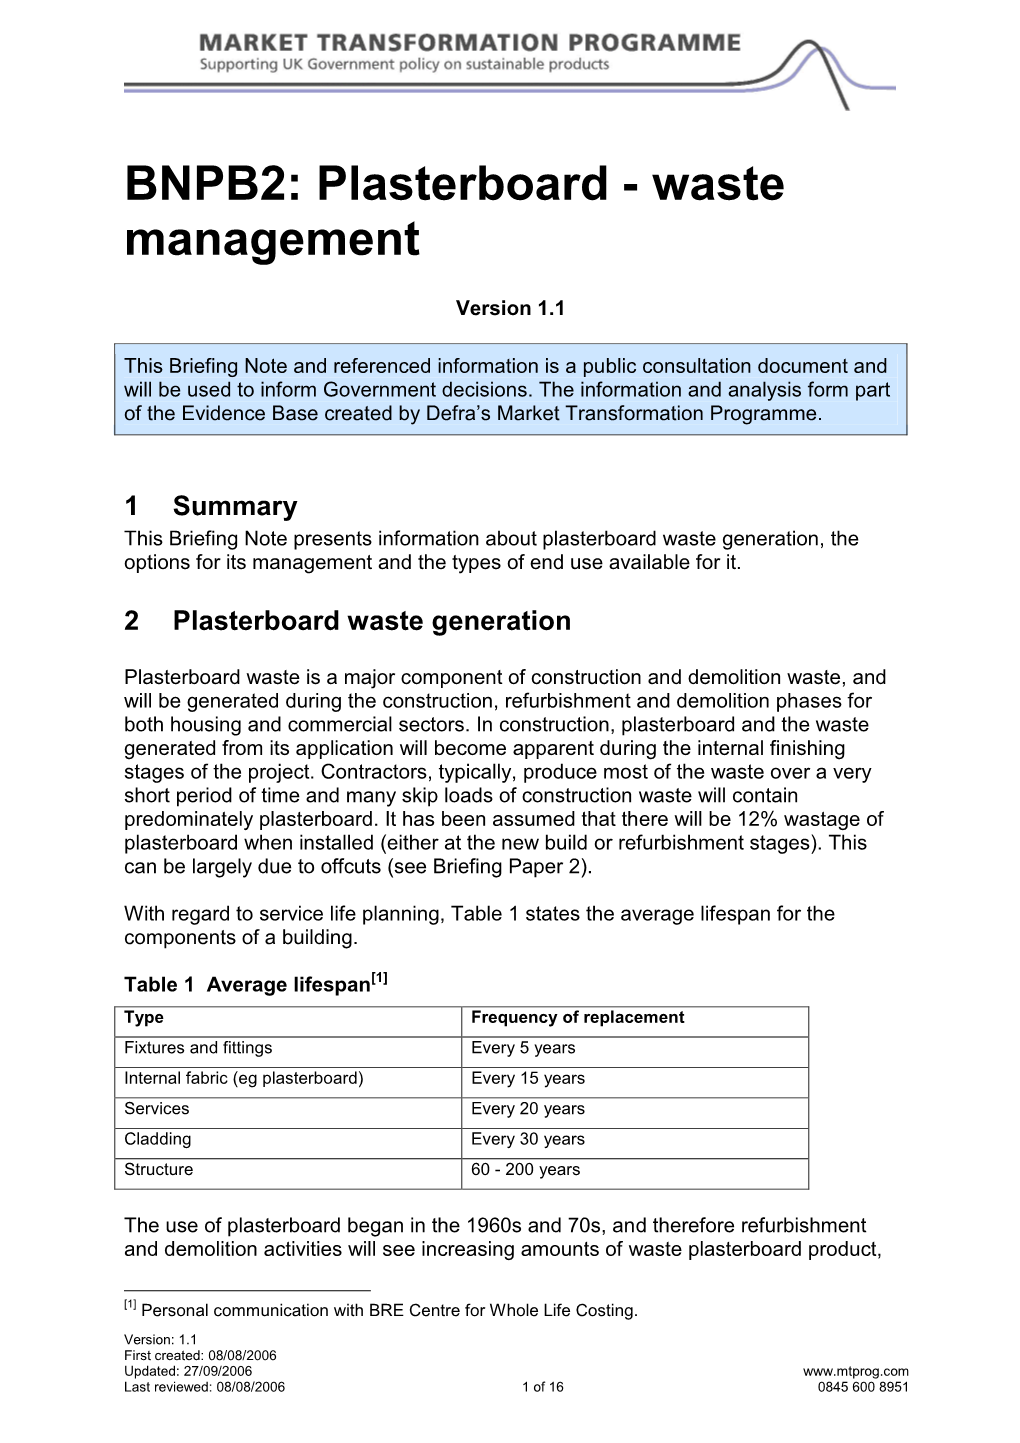 Plasterboard - Waste Management